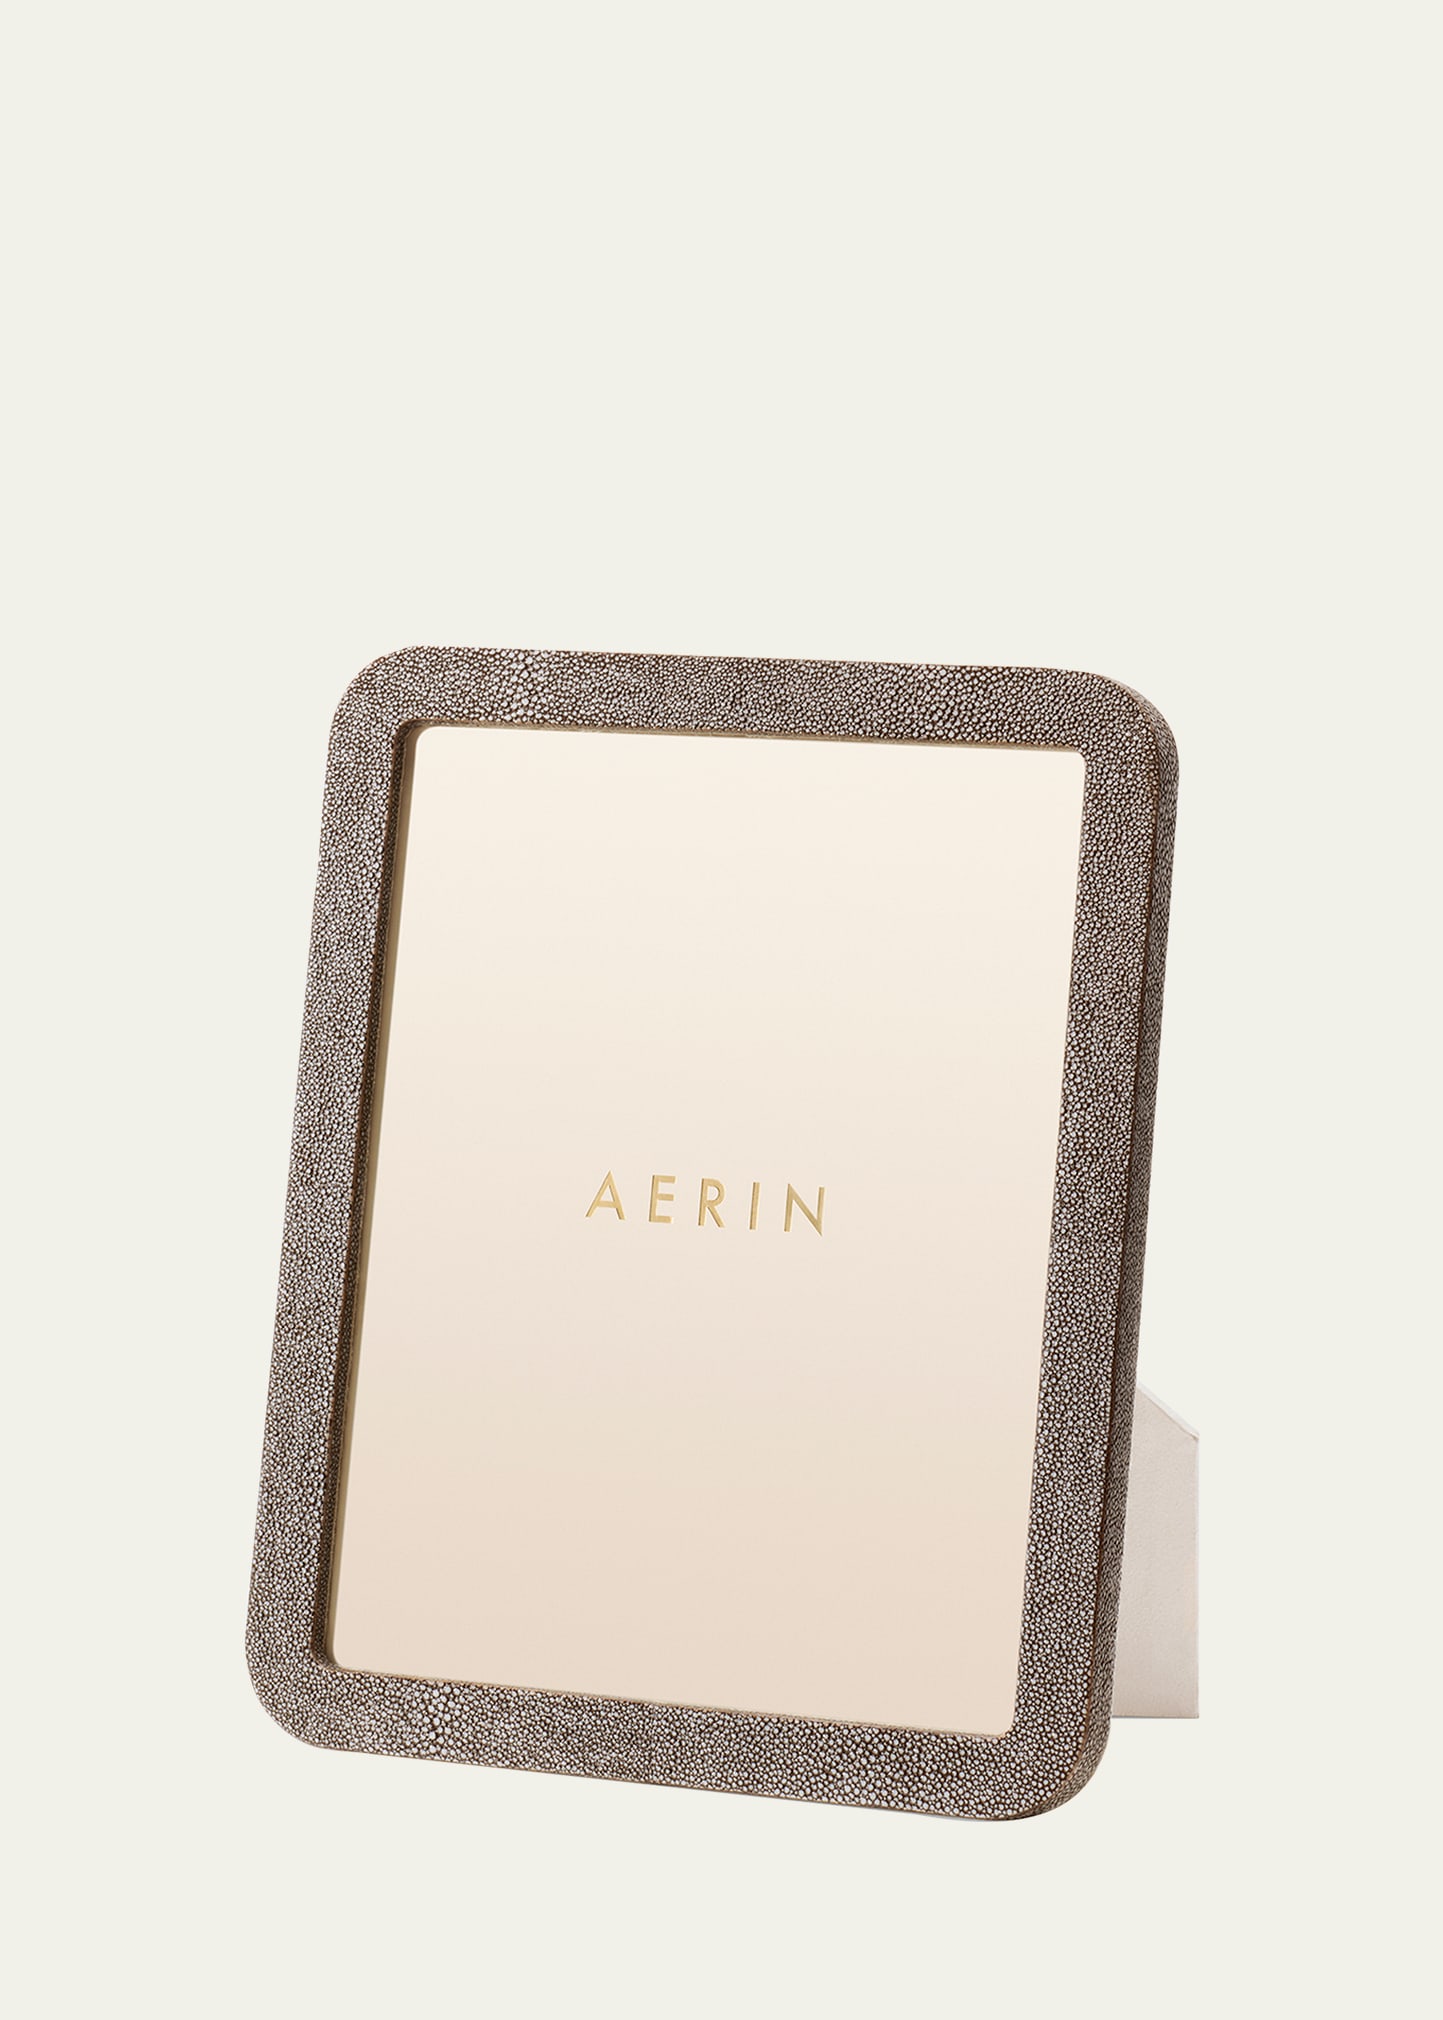 AERIN Modern Shagreen Frame, 8" x 10"